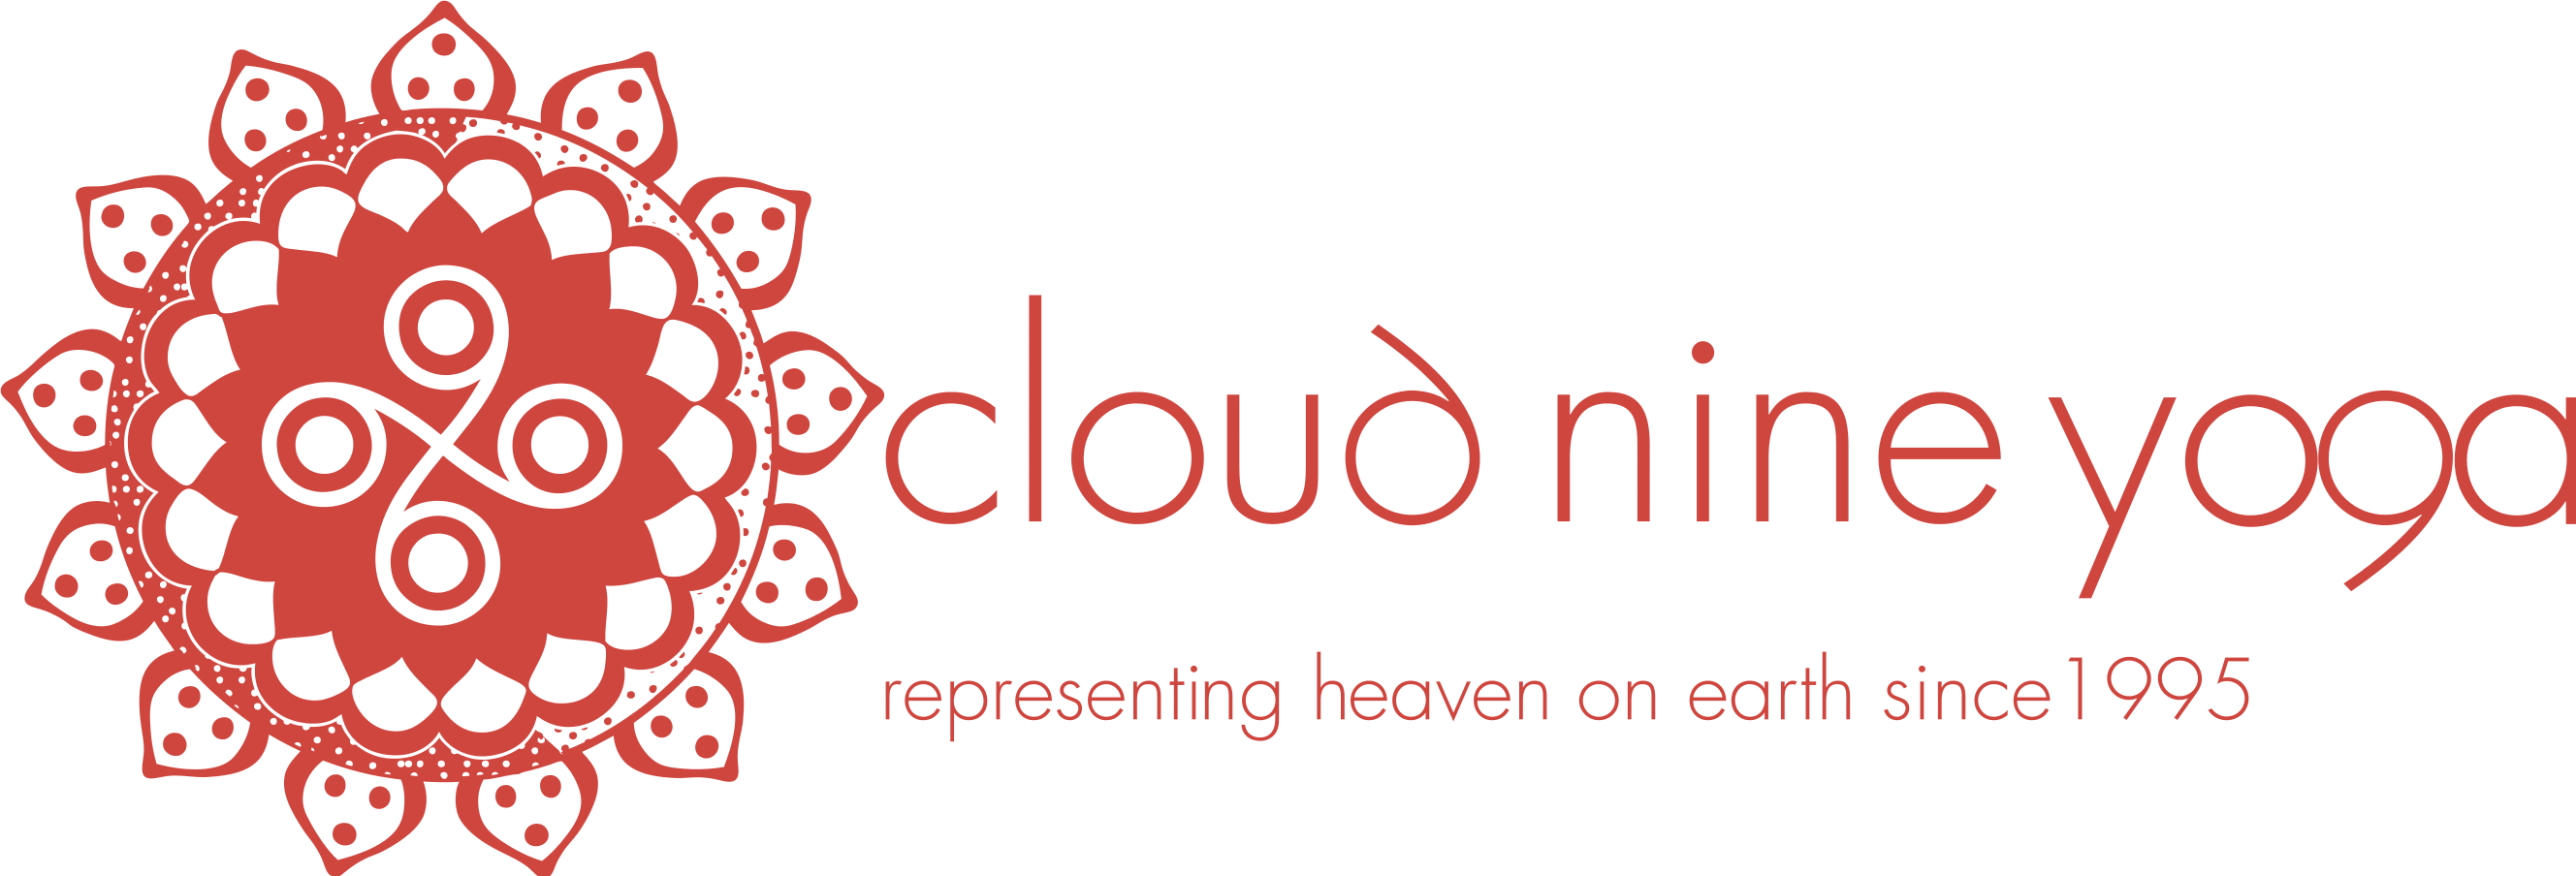 Cloud Nine Yoga LLC